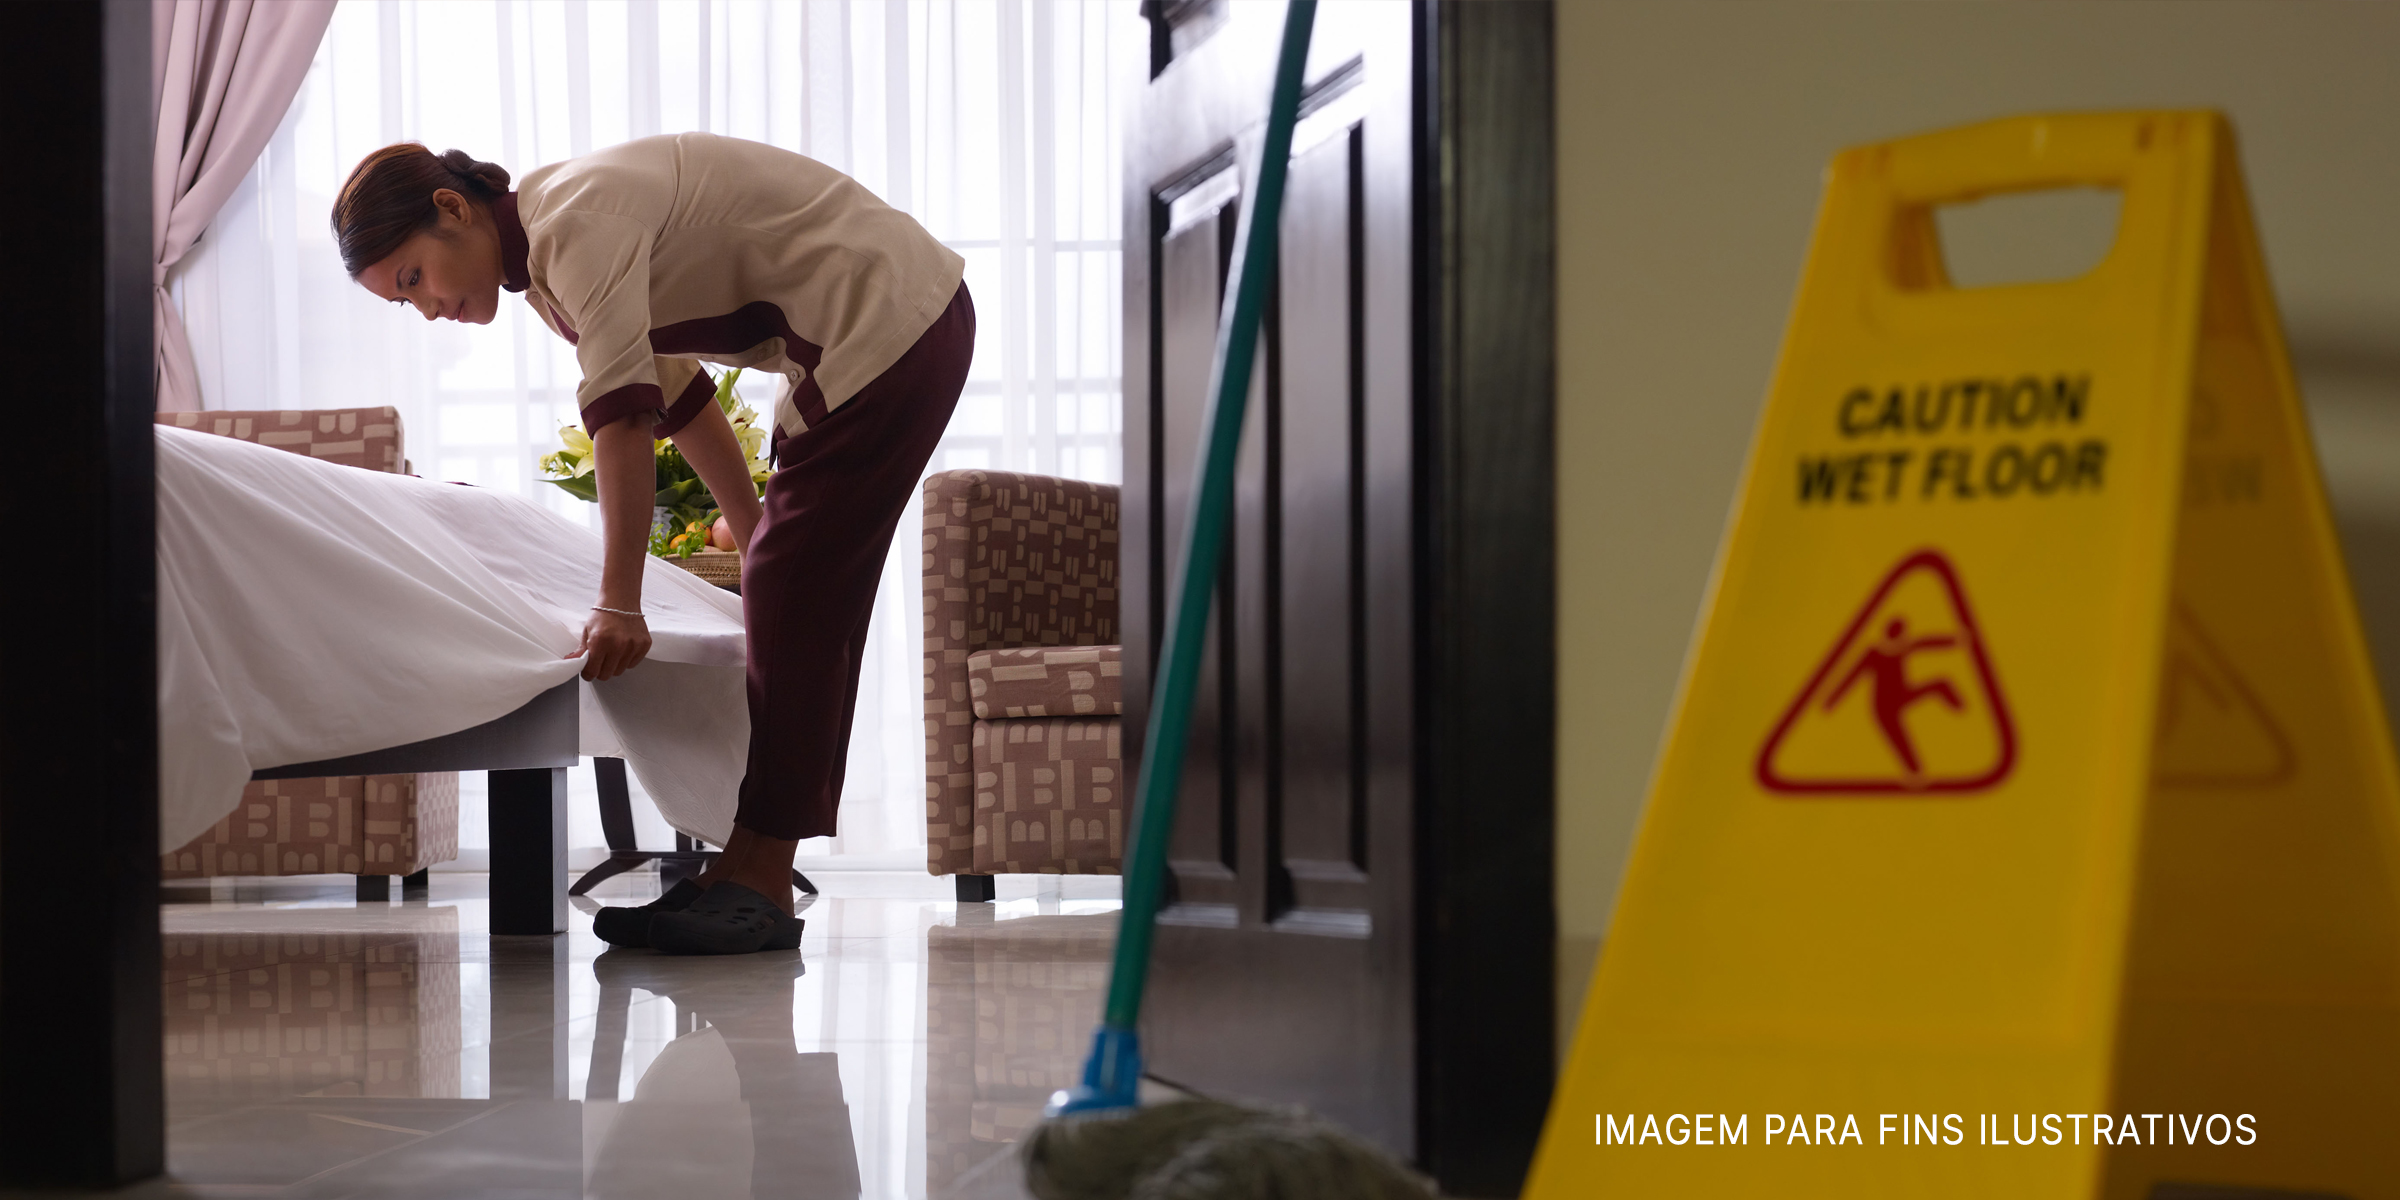 Camarera limpiando una habitación. | Foto: Shutterstock